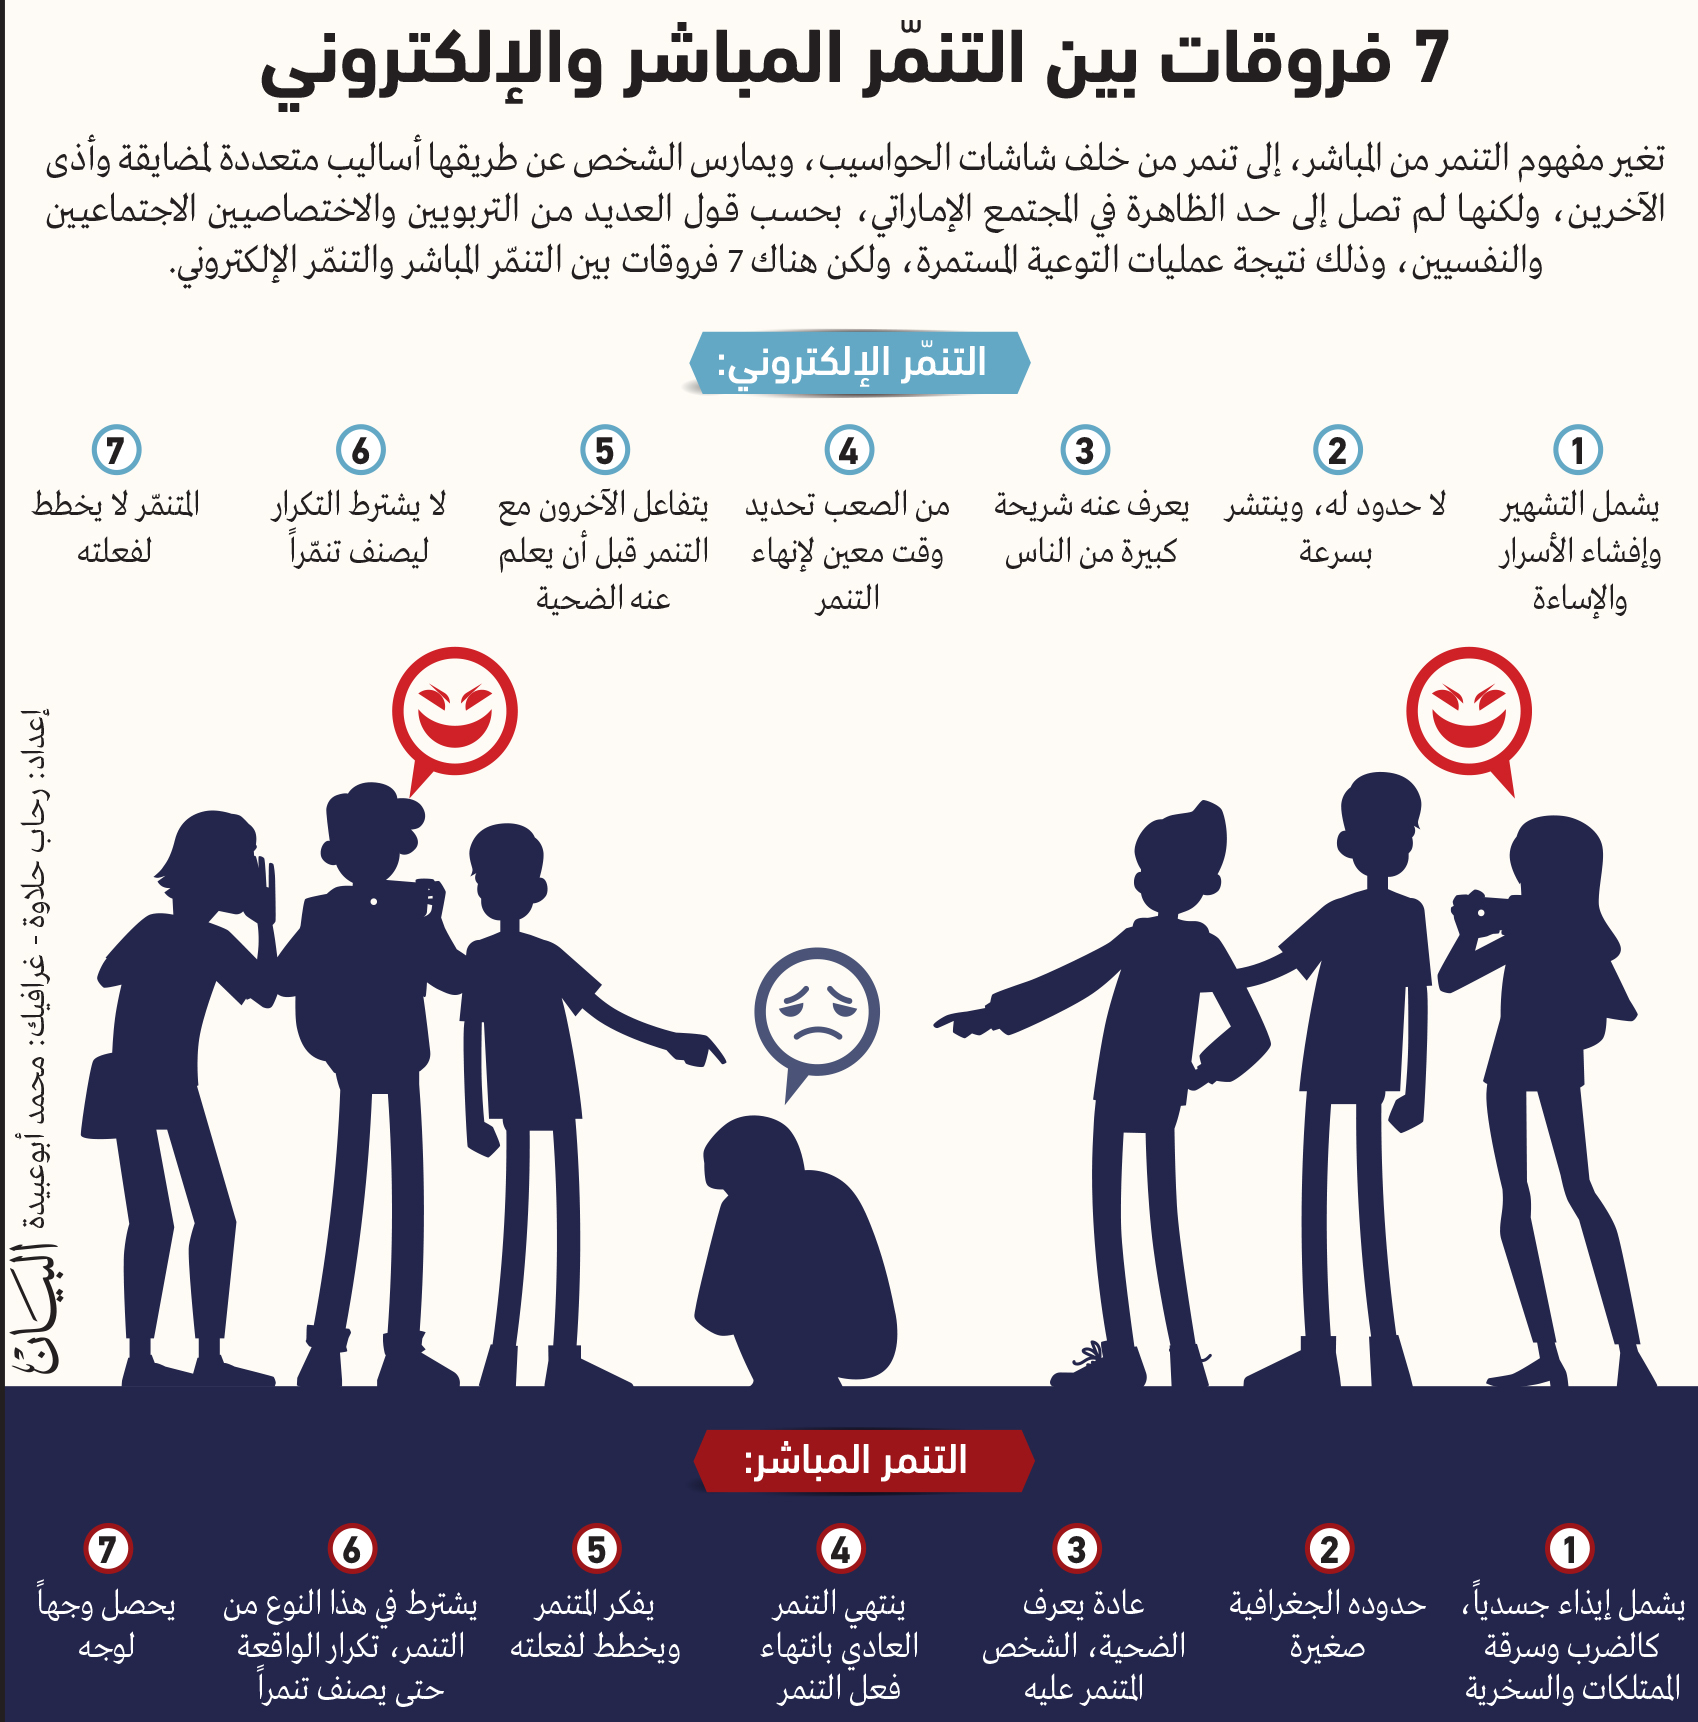 5 دوافع للتنمر الإلكتروني بين الطلبة عبر الإمارات أخبار وتقارير البيان